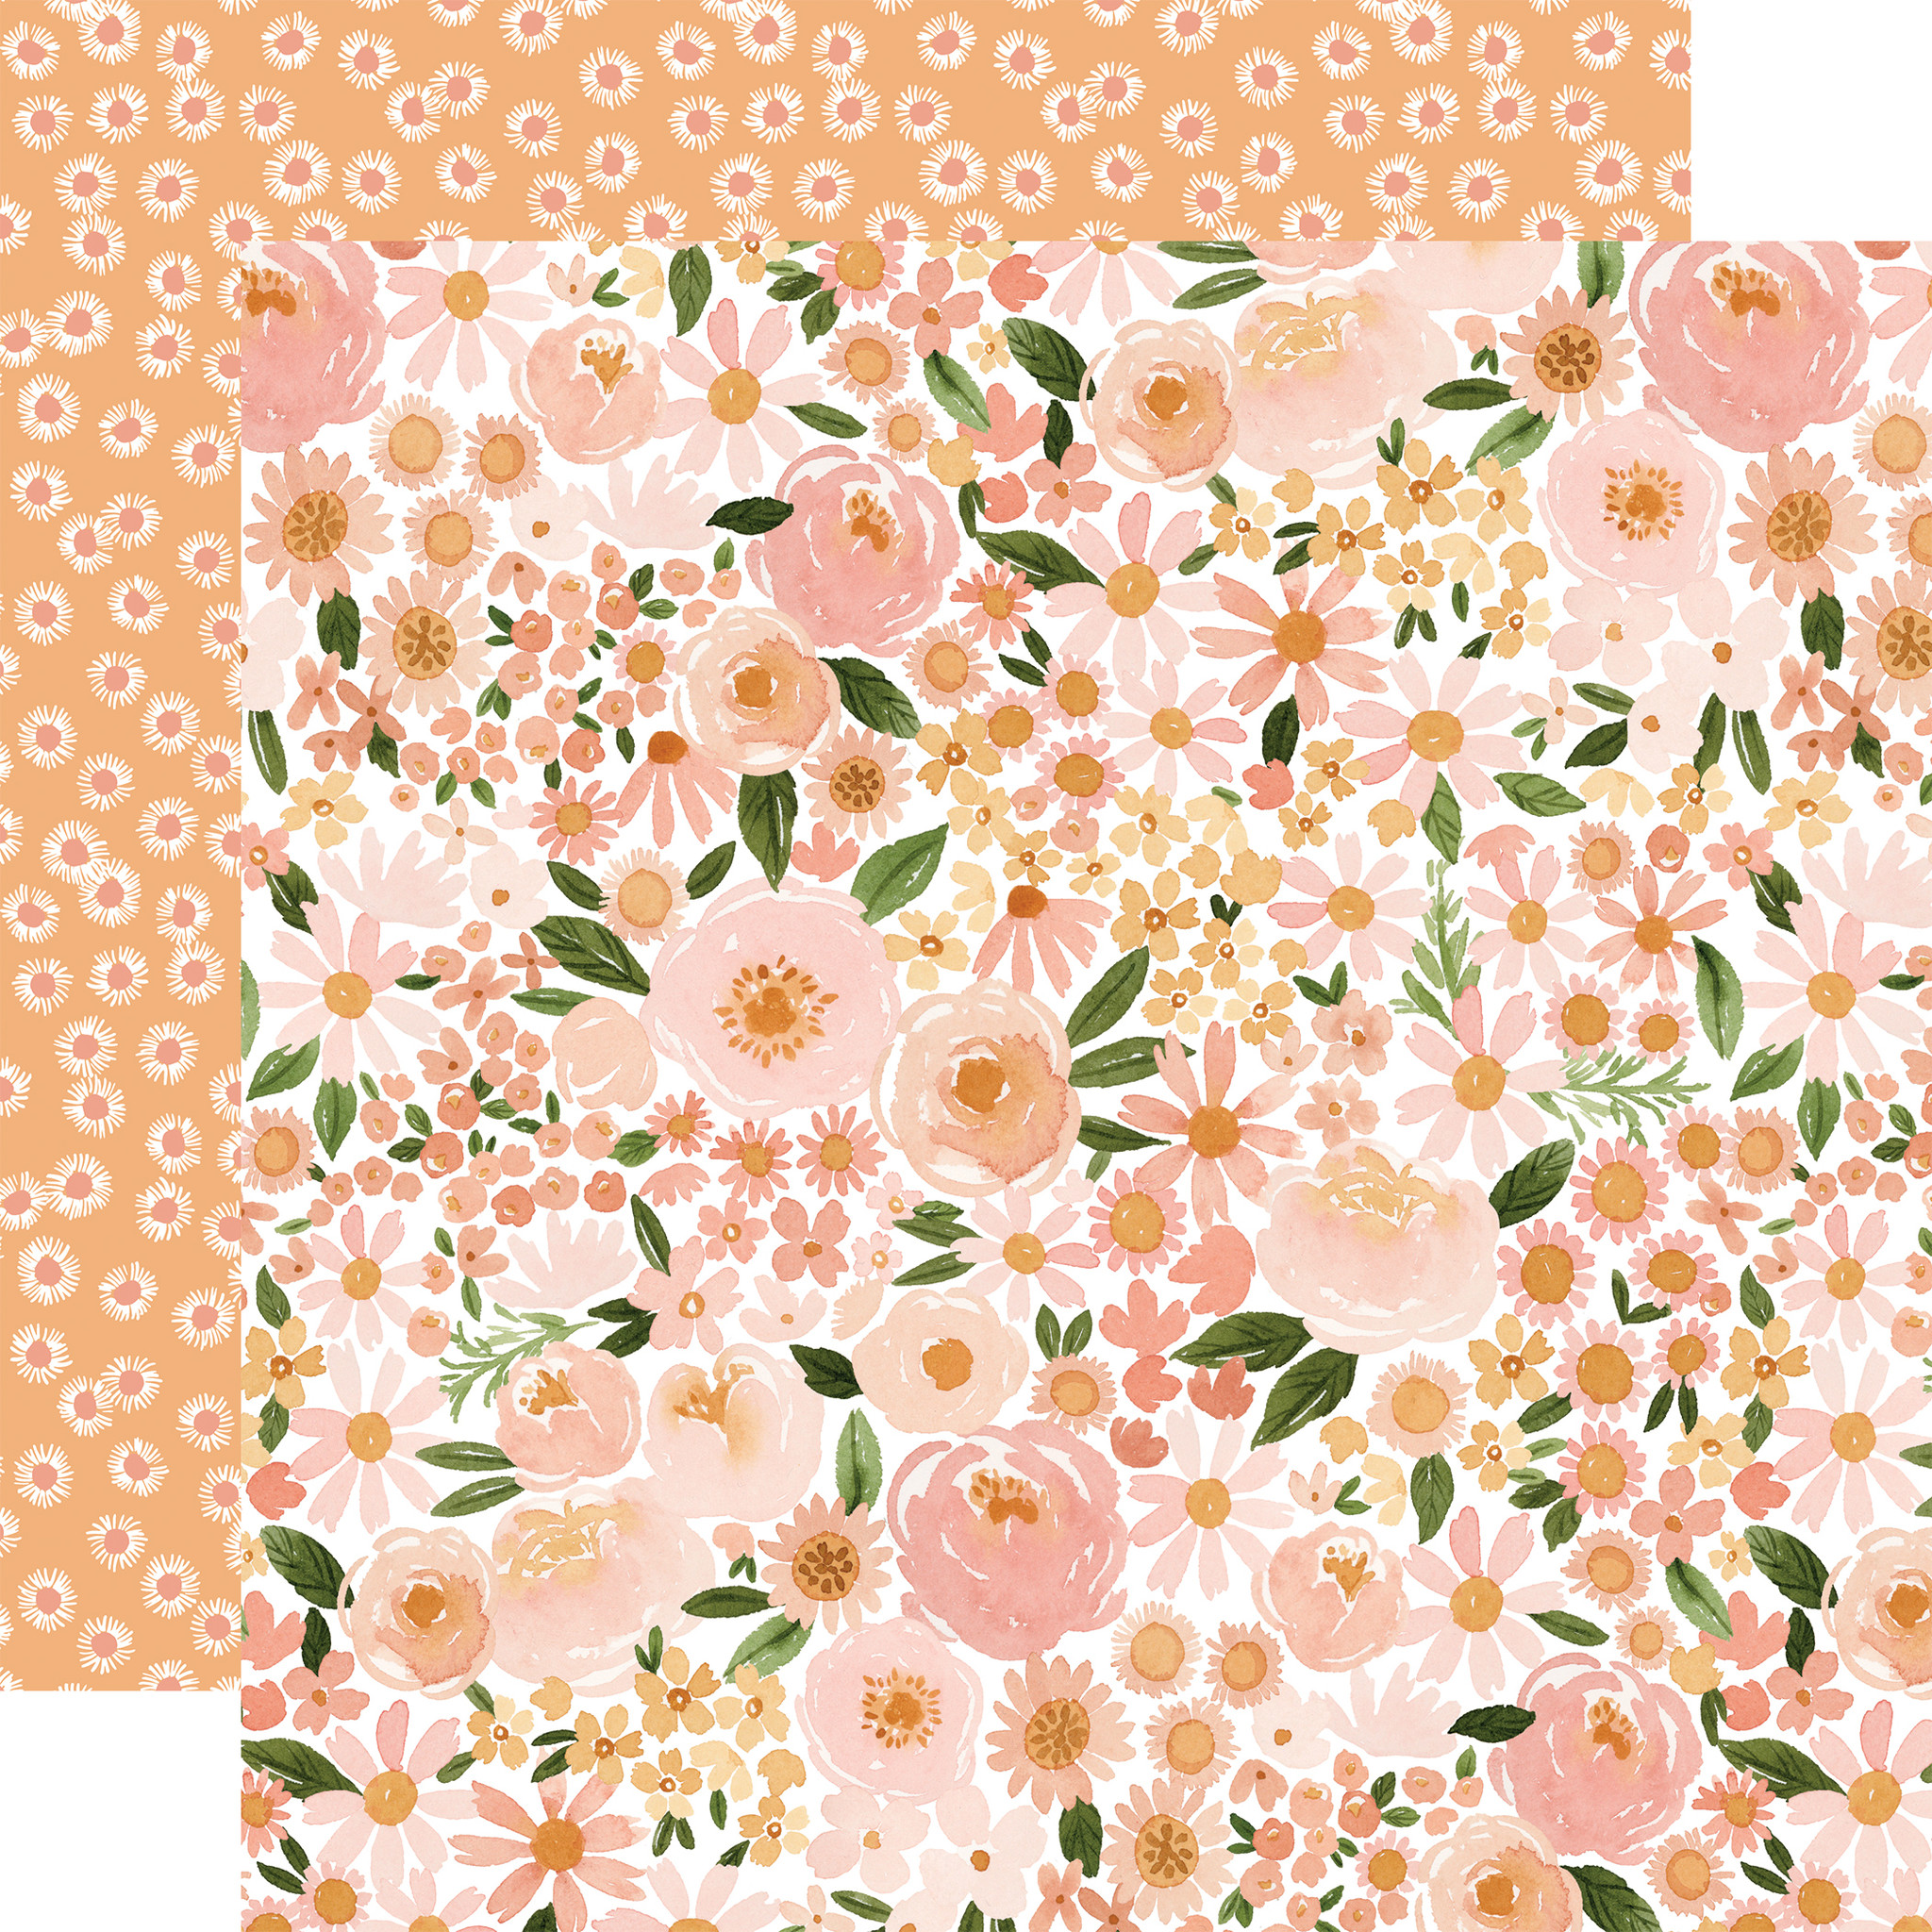 Flora No. 6: Soft Medium Floral 12x12 Patterned Paper - Echo Park Paper Co.